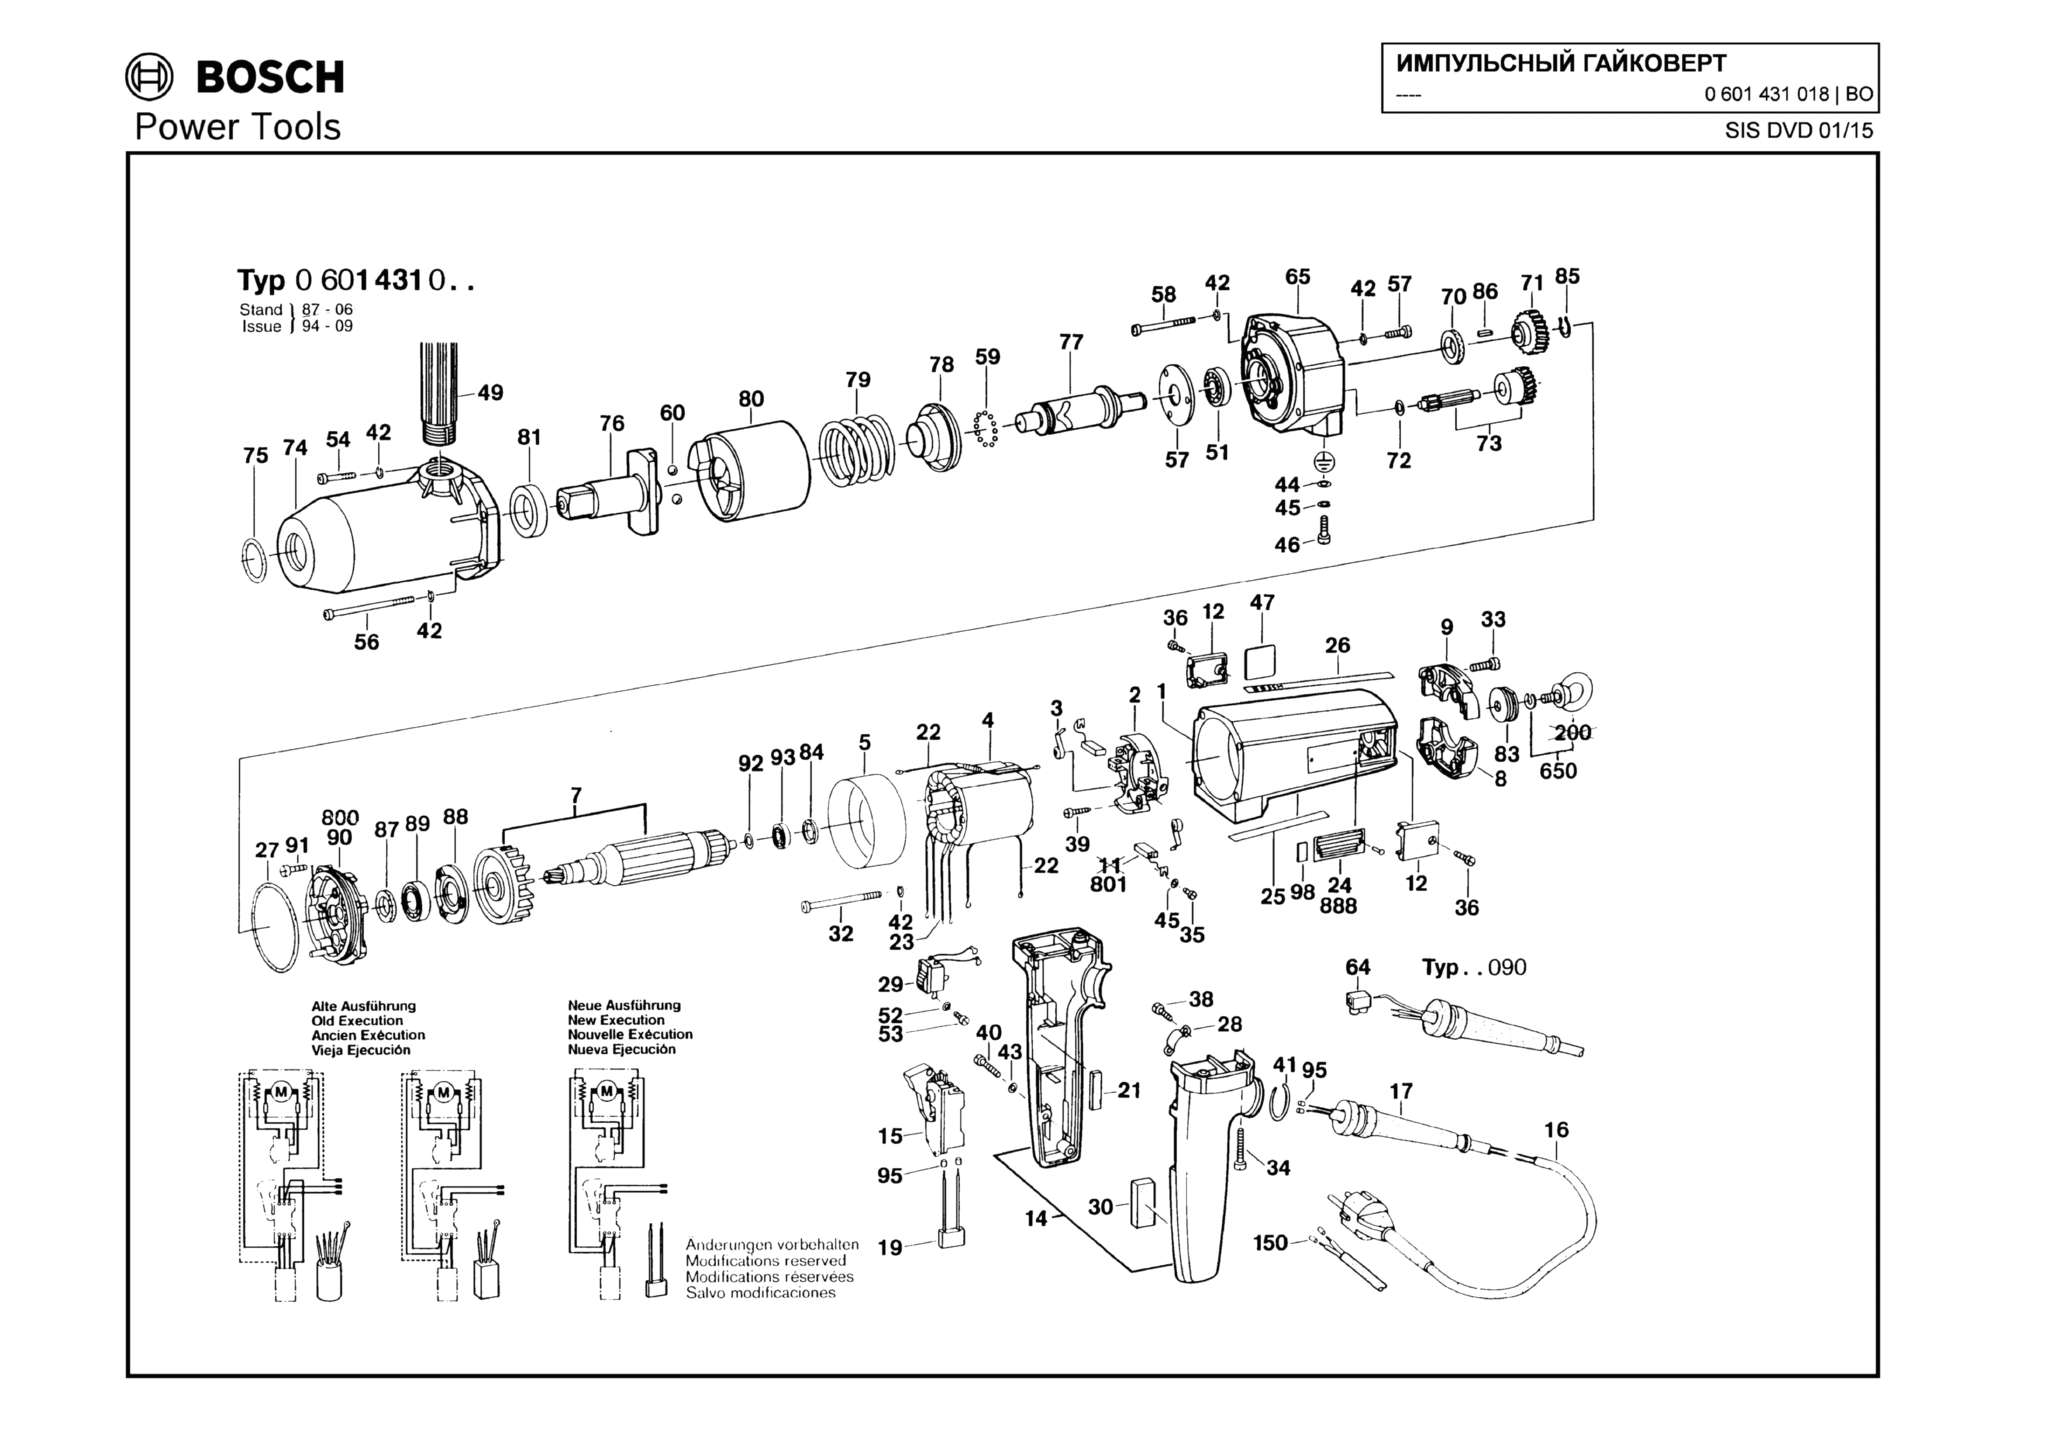 Запчасти, схема и деталировка Bosch (ТИП 0601431018)